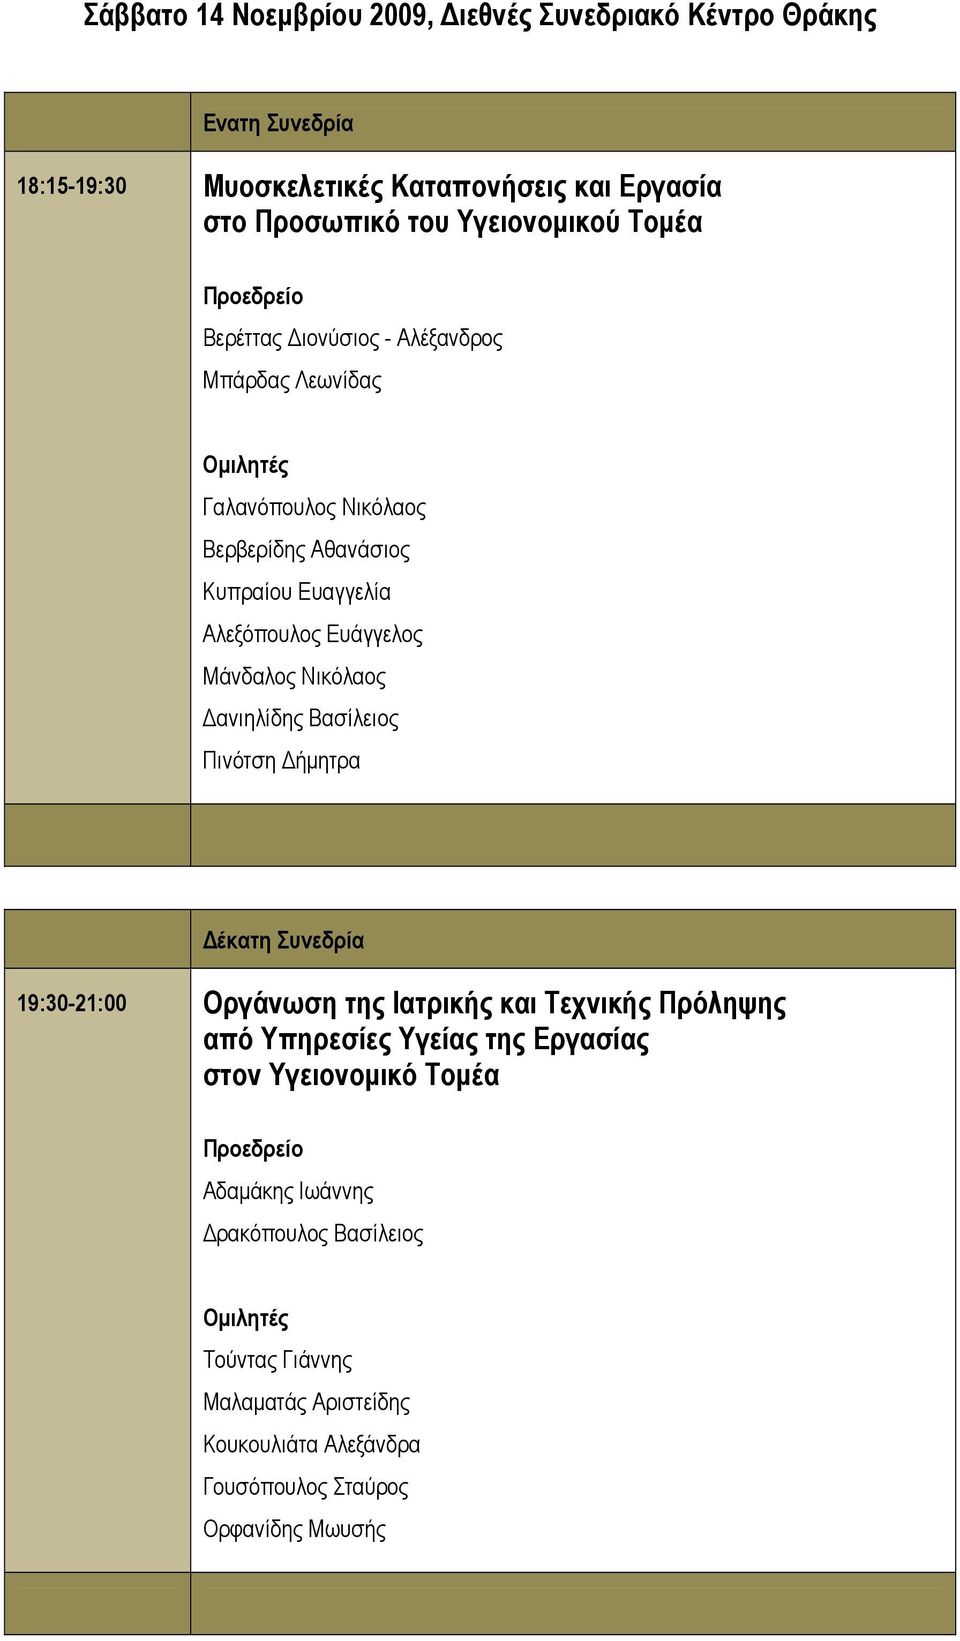 Νικόλαος Δανιηλίδης Βασίλειος Πινότση Δήμητρα Δέκατη Συνεδρία 19:30-21:00 Οργάνωση της Ιατρικής και Τεχνικής Πρόληψης από Υπηρεσίες Υγείας της Εργασίας στον